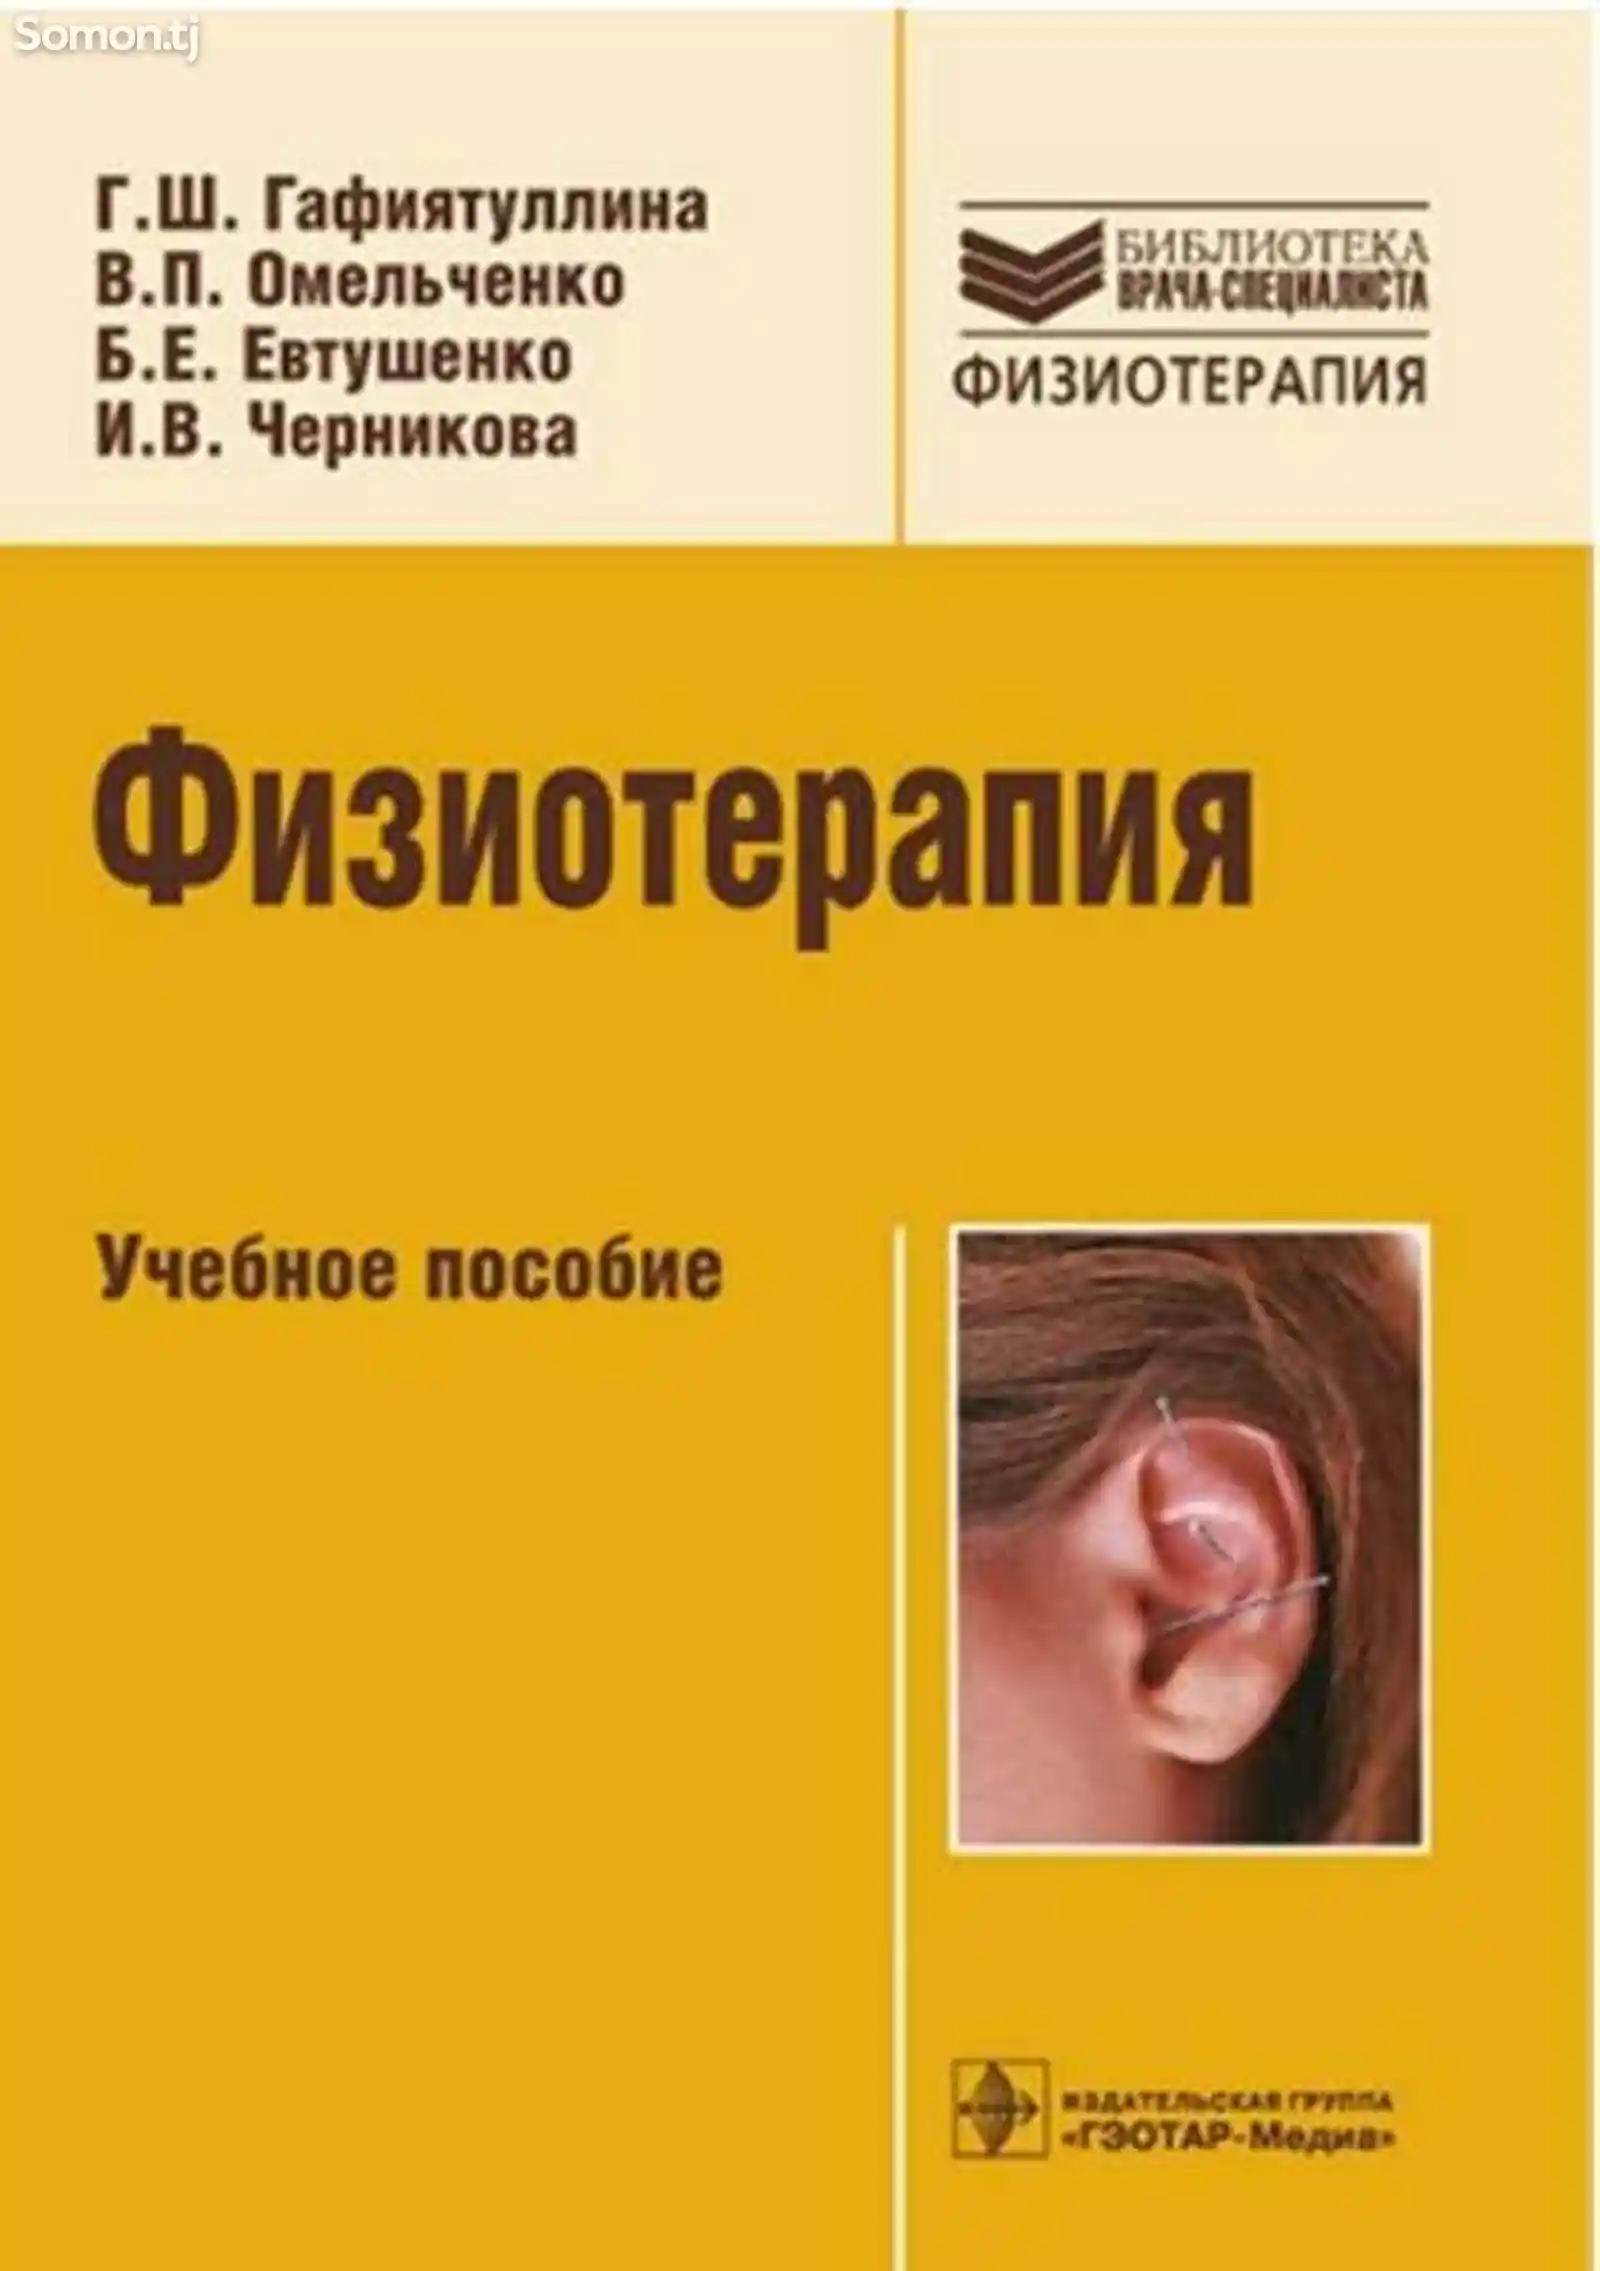 Кига Физиотерапия автор Гафиятуллика Г. Ш.-1